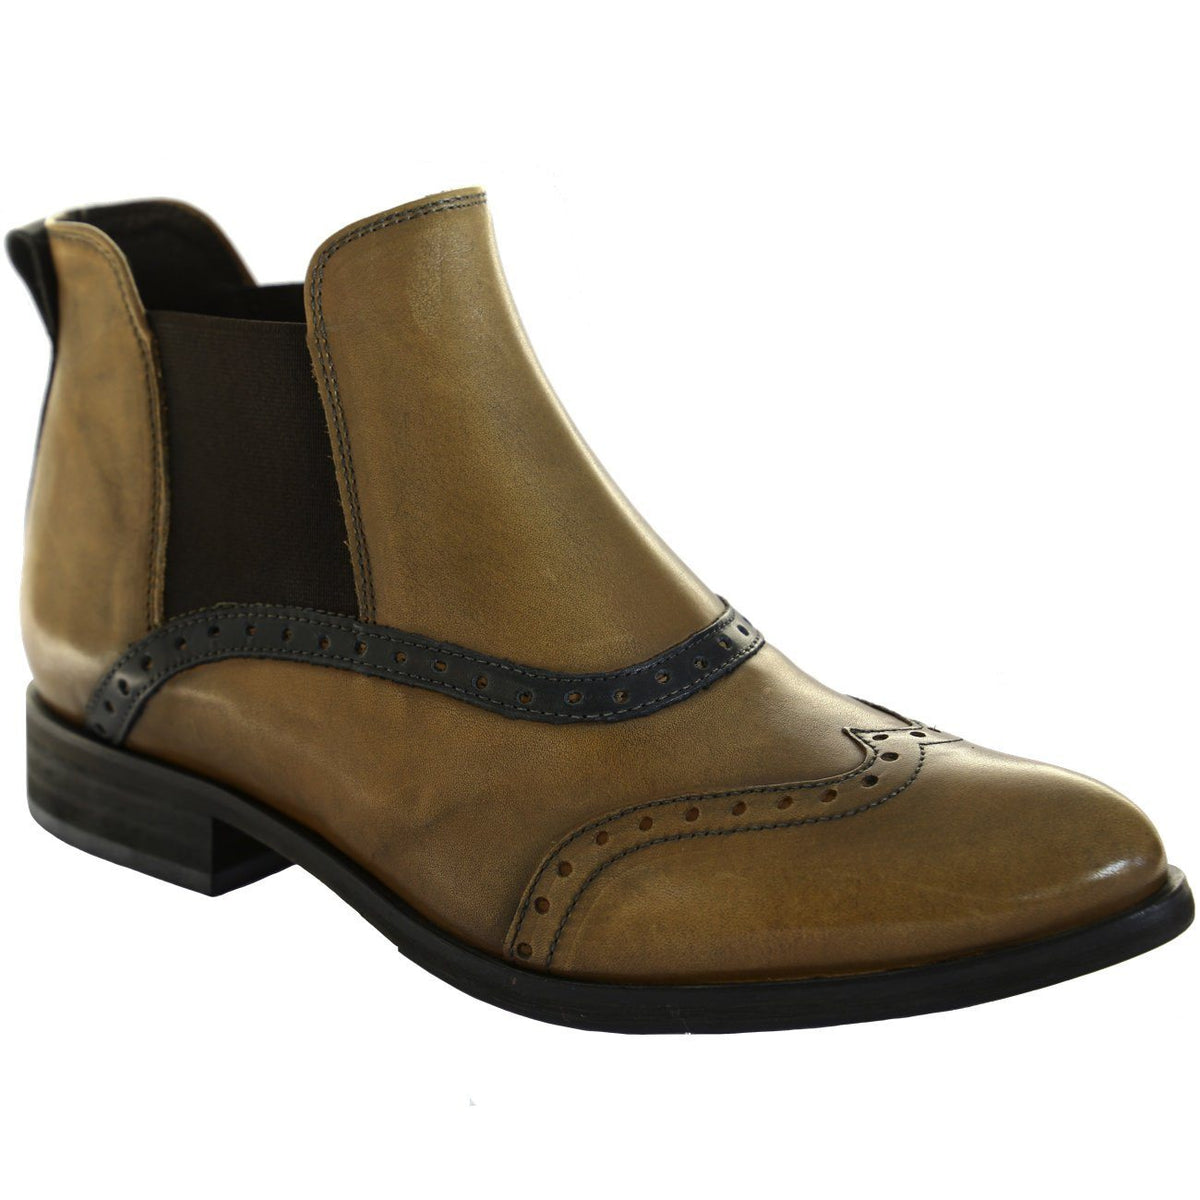 Dkode, Solvi, Boots, Leather, Cognac/Black Boots Dkode Cognac/Black 007 37 